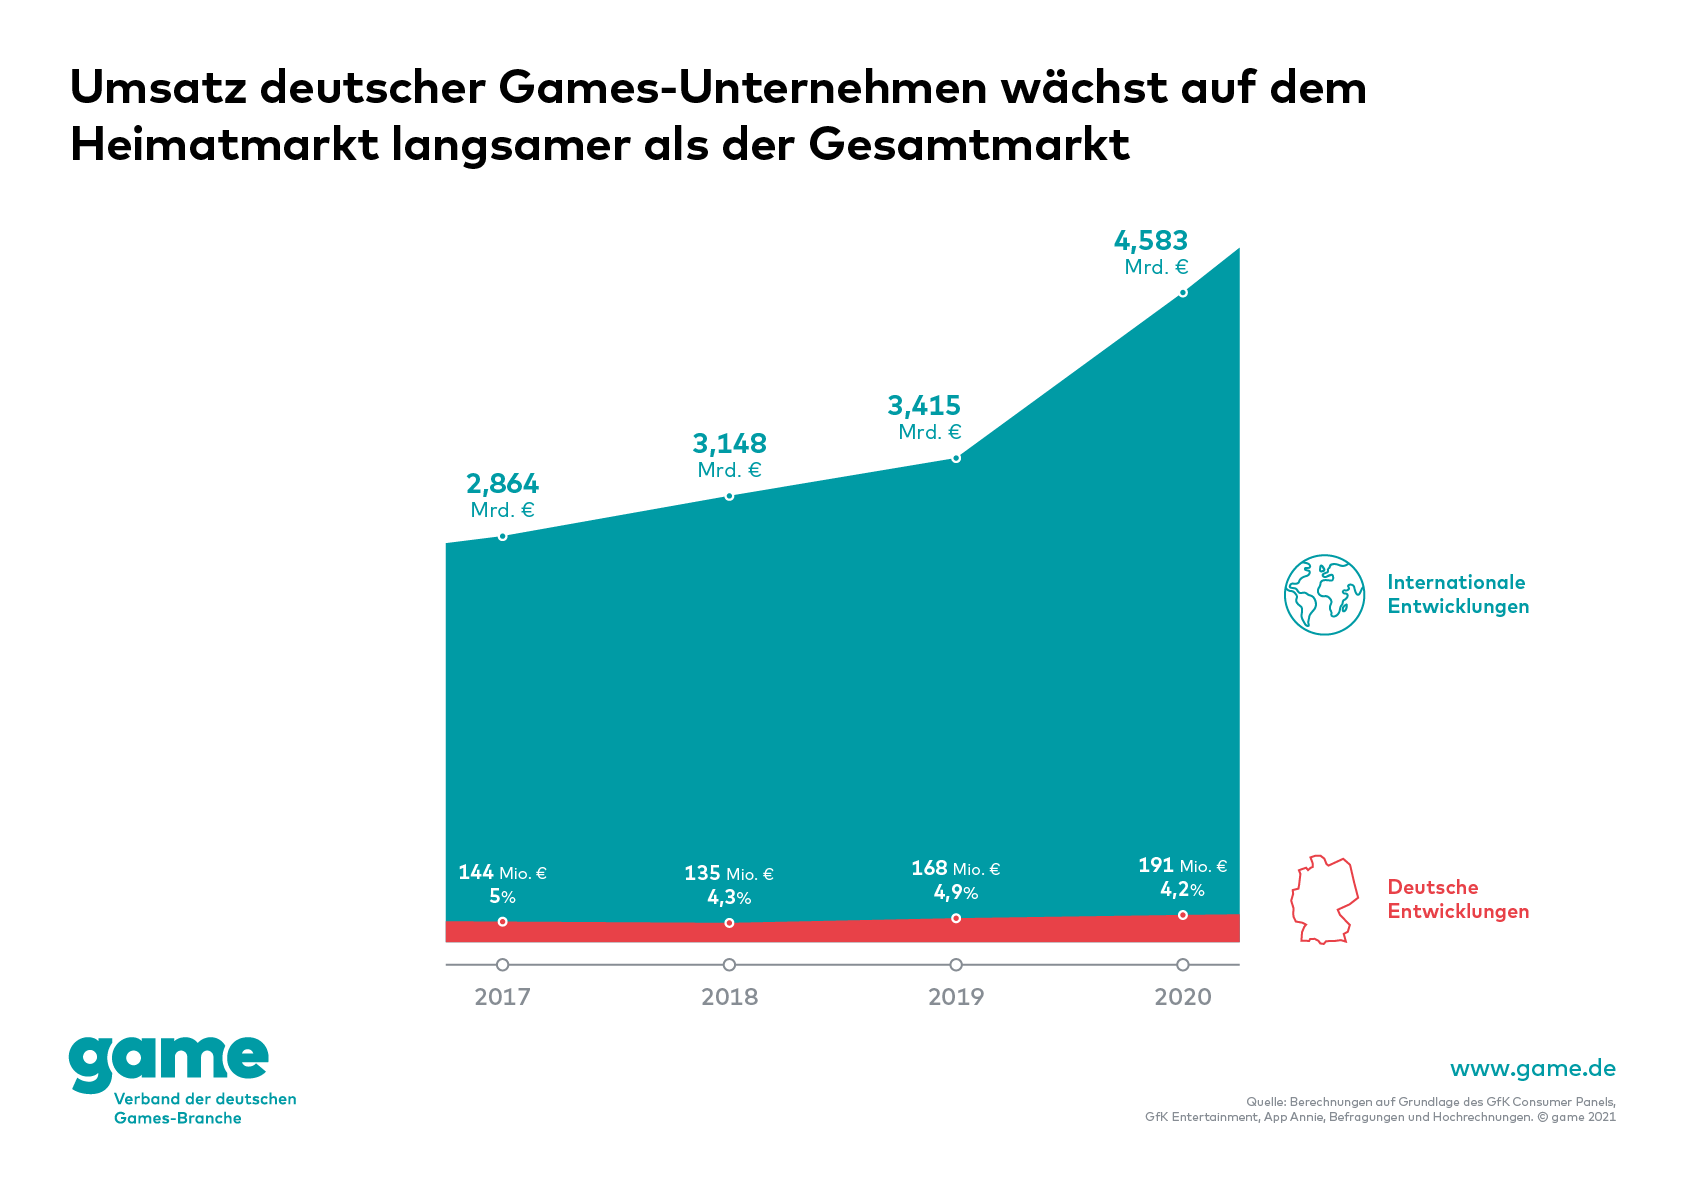 Wachstum Umsatz deutscher Games-Unternehmen